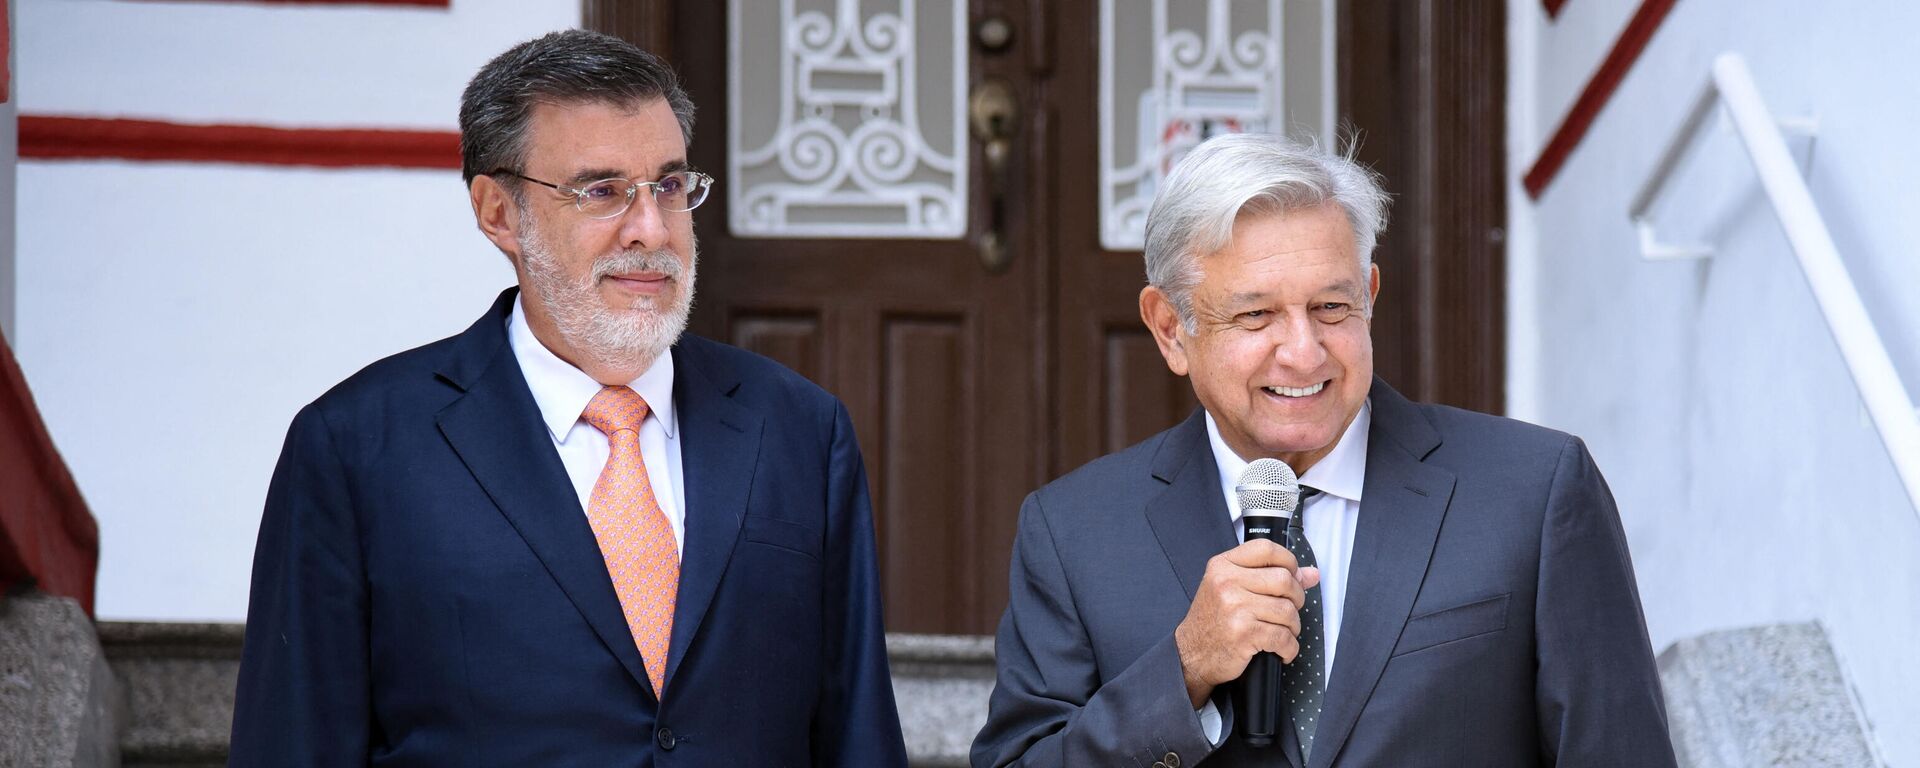 El presidente de México, Andrés Manuel López Obrador, (derecha) y el Consejero Jurídico de la Presidencia de México, Julio Scherer Ibarra - Sputnik Mundo, 1920, 02.09.2021